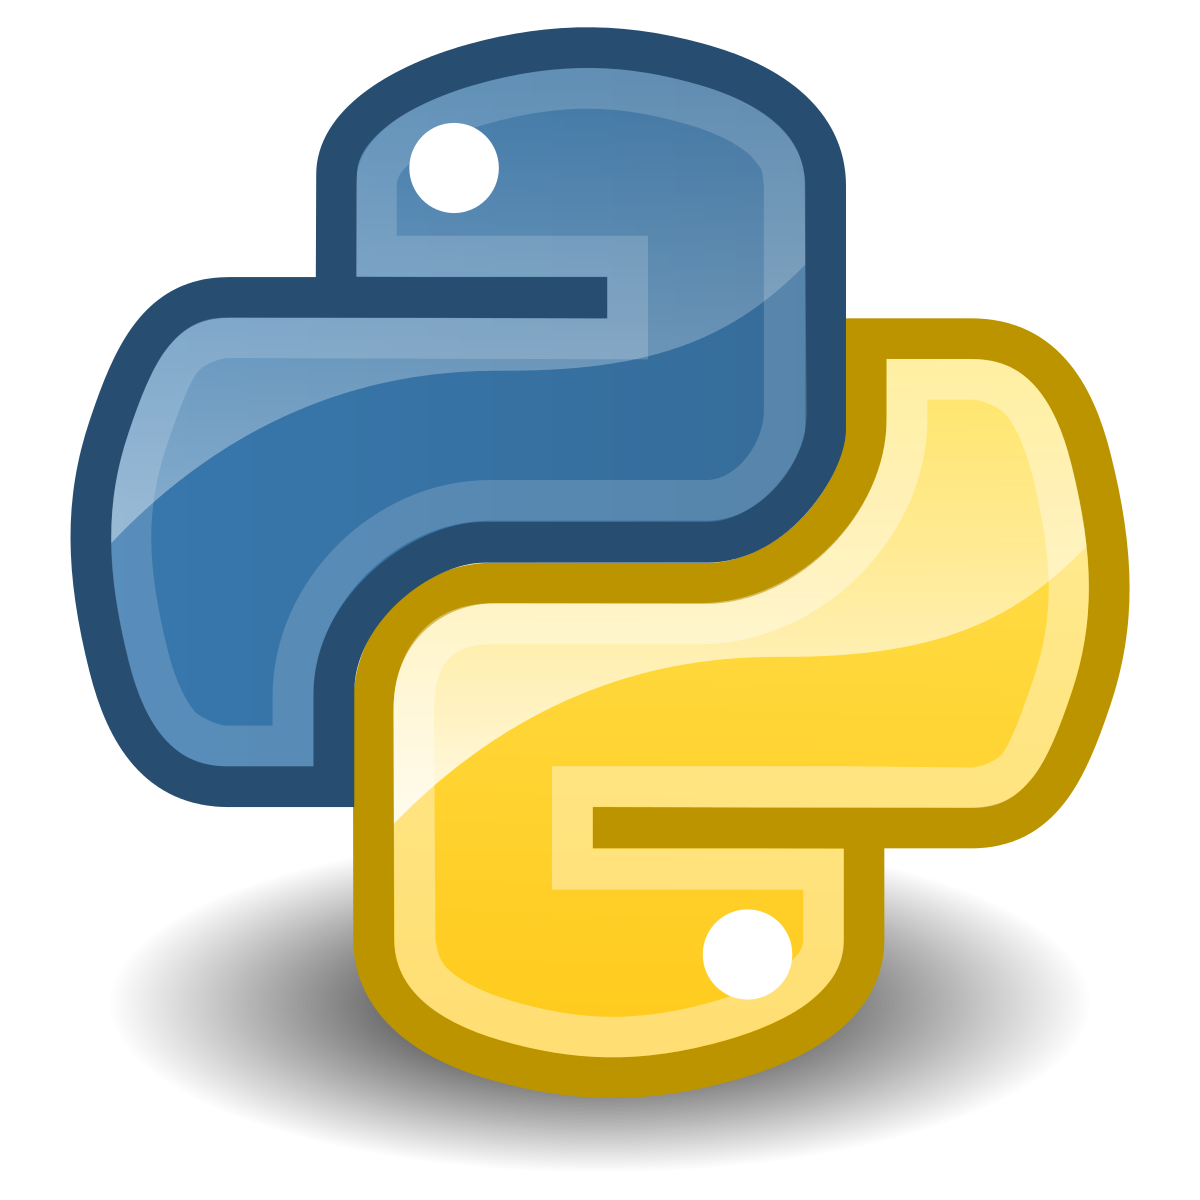    Python,  